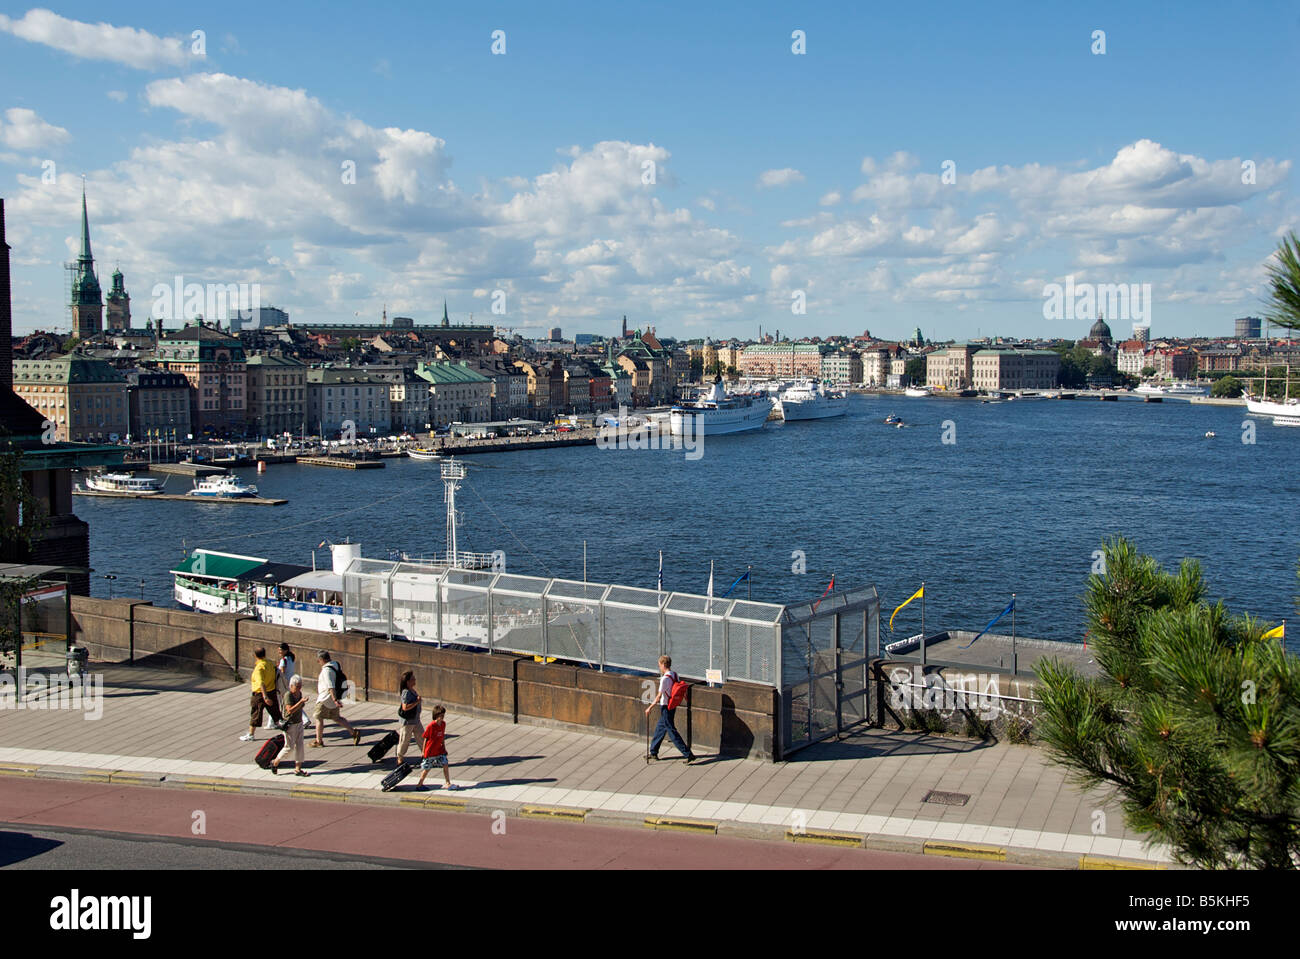 Vue panoramique sur le port de Stockholm Suède Stockholm Södermalm Banque D'Images